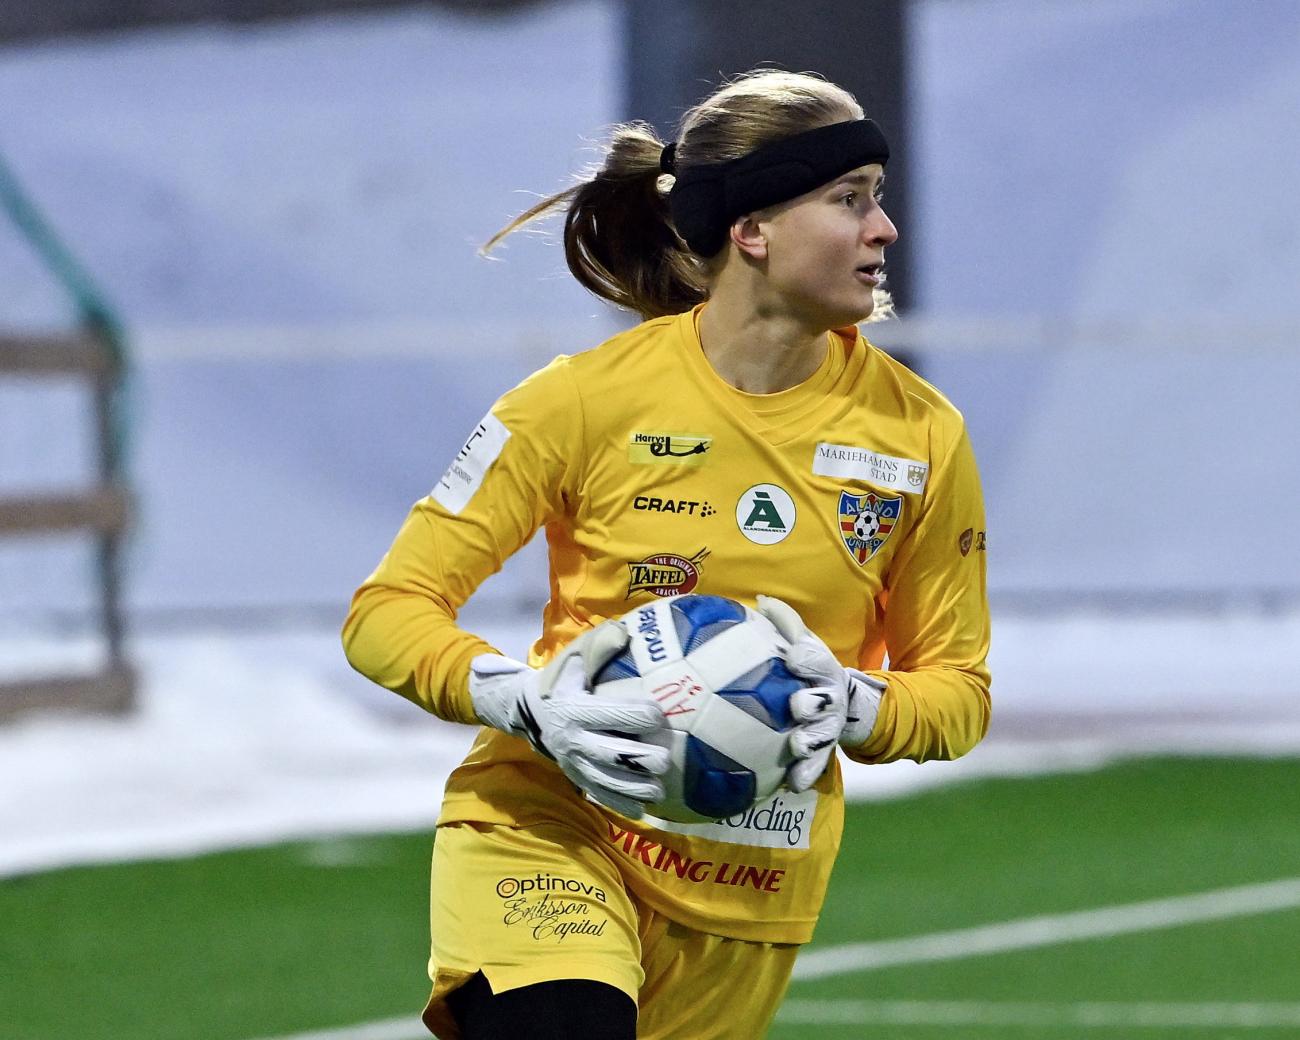 Målvakten Jessica Kiviaho, senast i HPS, har höga förväntningar på Åland United den här säsongen. 